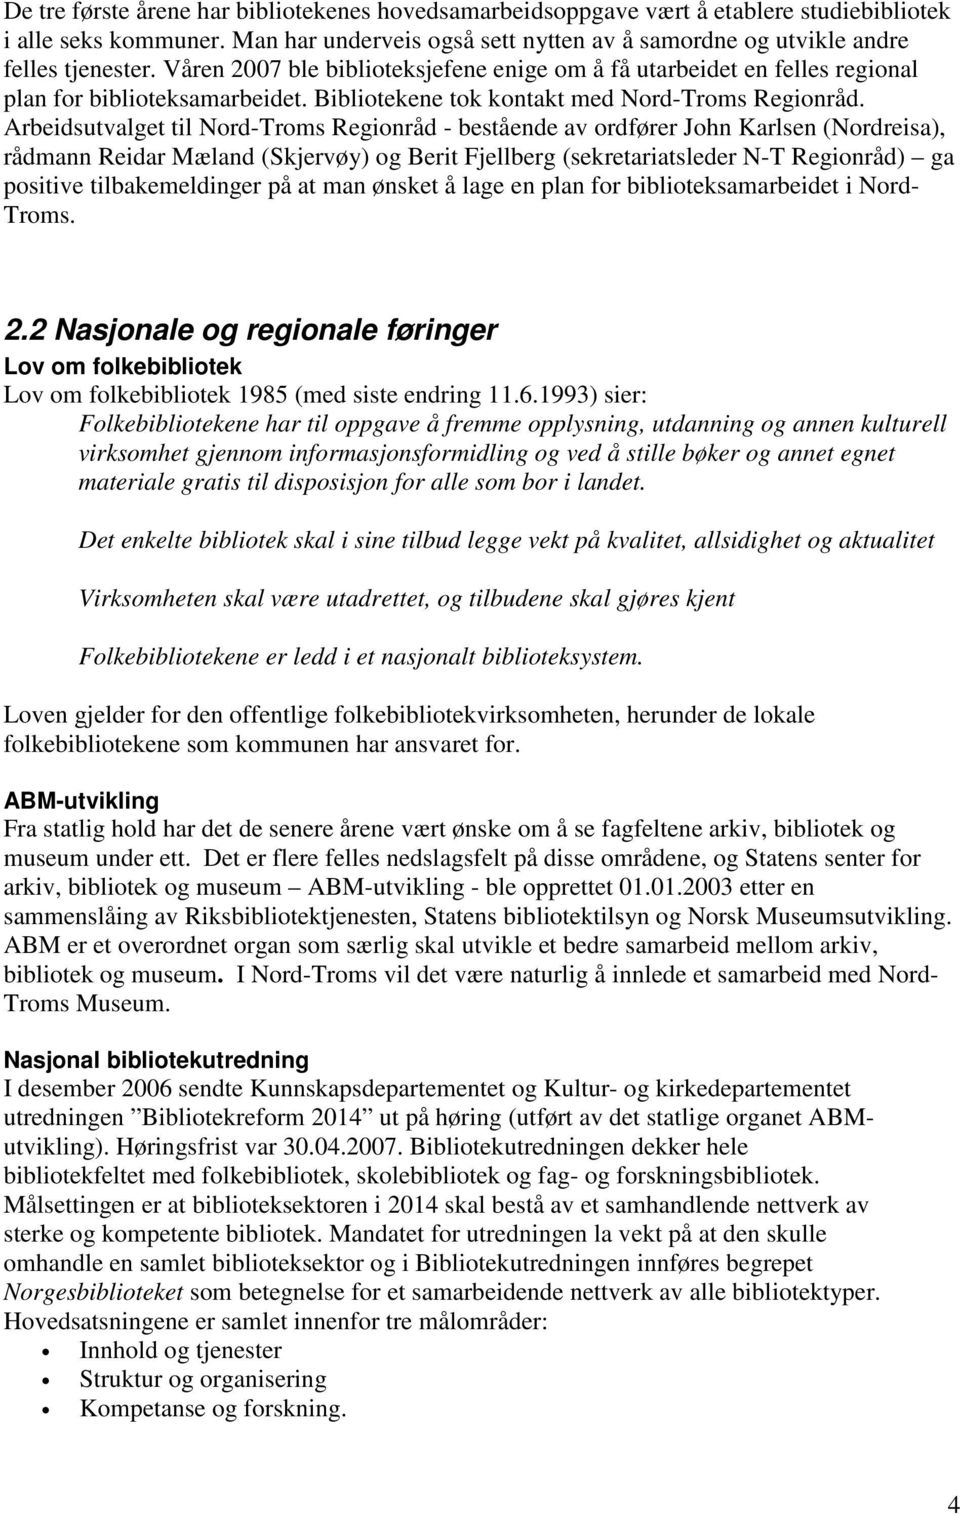 Arbeidsutvalget til Regionråd - bestående av ordfører John Karlsen (Nordreisa), rådmann Reidar Mæland (Skjervøy) og Berit Fjellberg (sekretariatsleder N-T Regionråd) ga positive tilbakemeldinger på